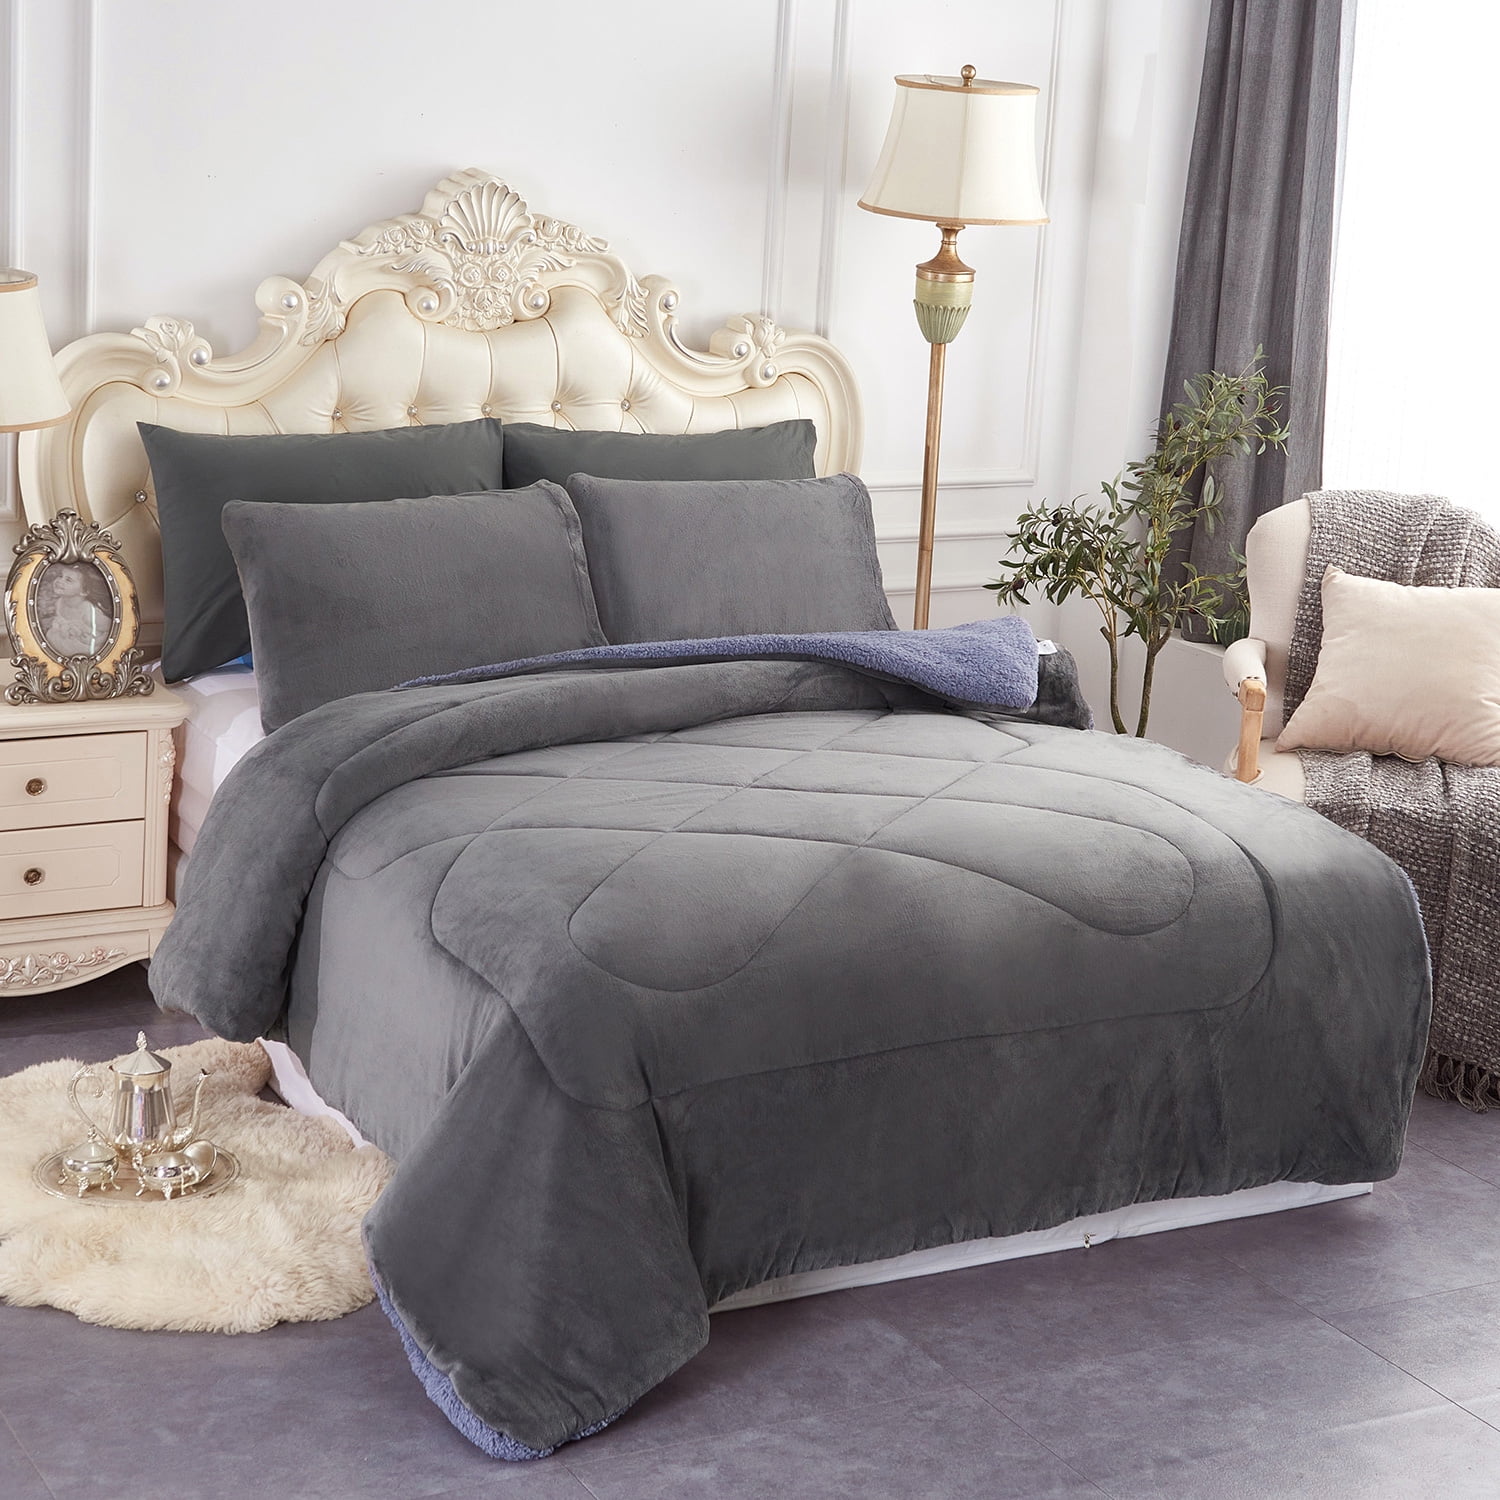 JML Sherpa Fleece Bed Blanket Queen 3 Pieces,Thick Warm Blanket,Grey,75 x  83,5.7lb 